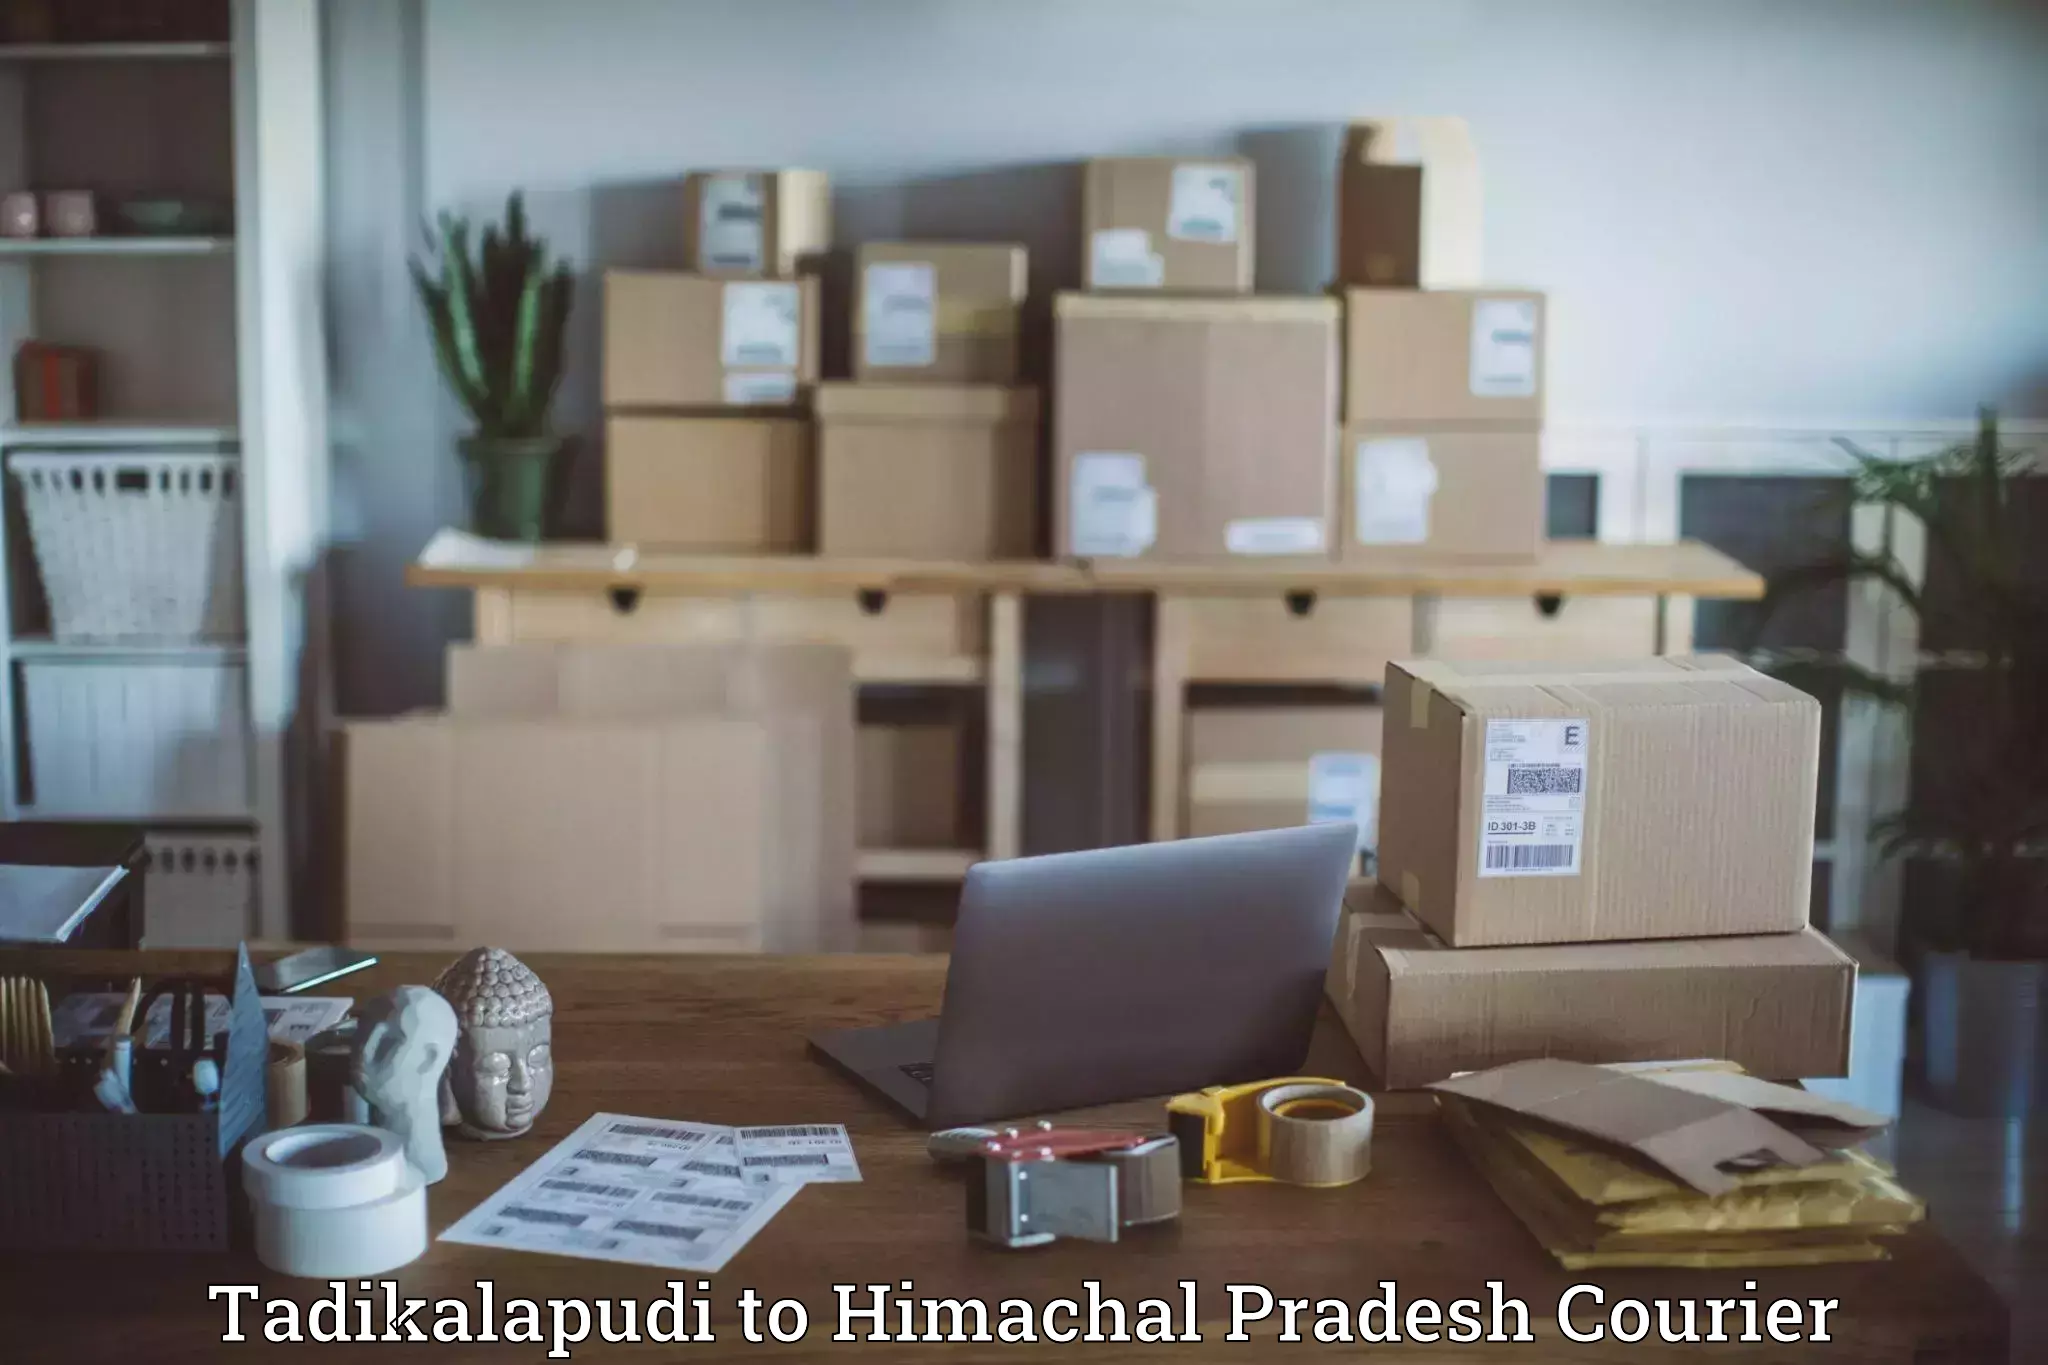 Corporate courier solutions Tadikalapudi to Joginder Nagar